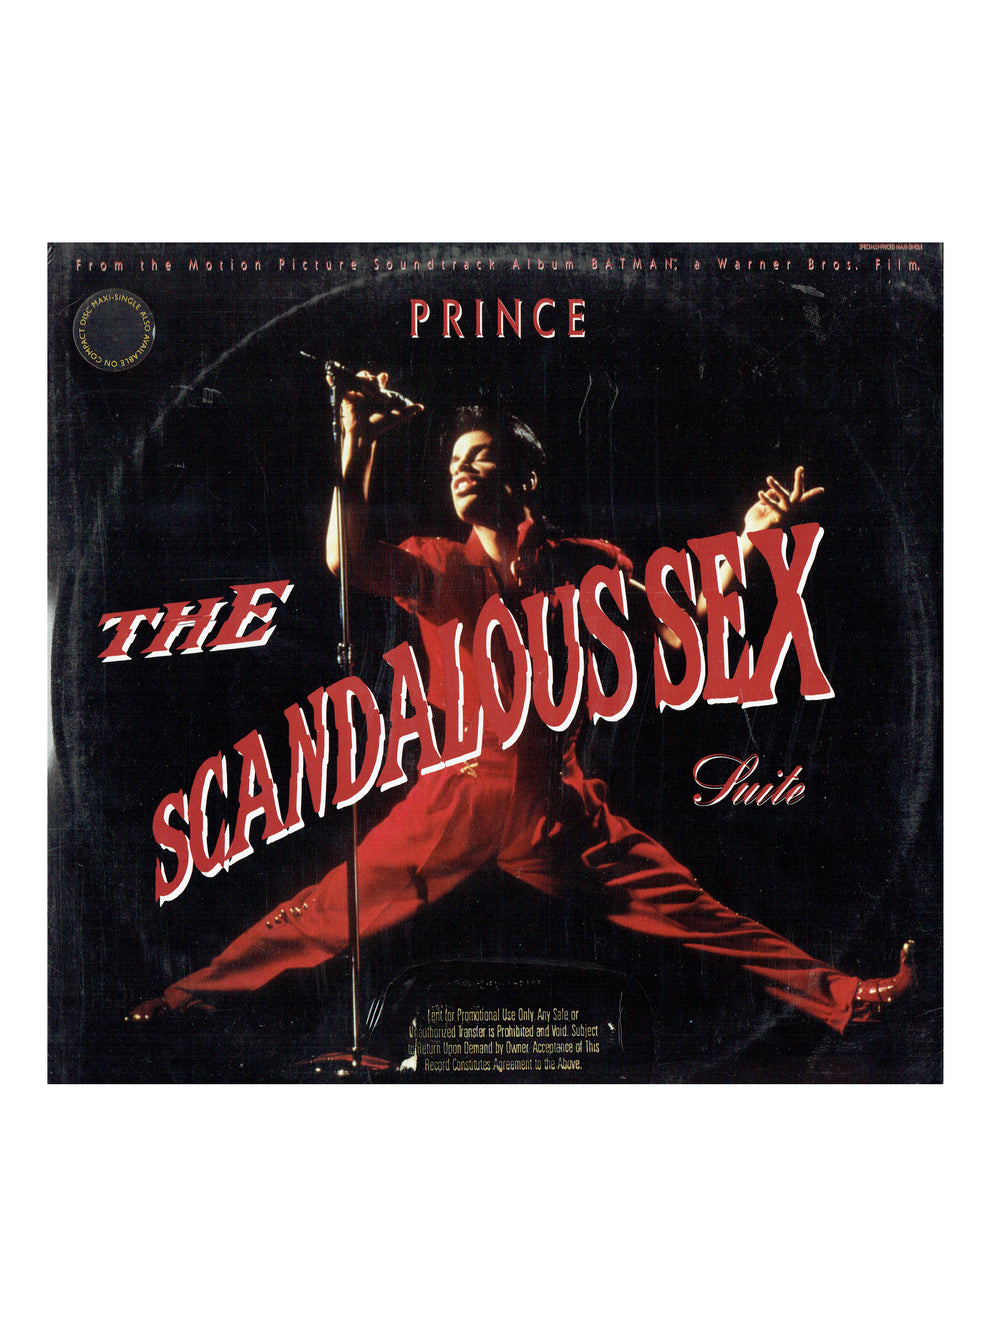 Prince Scandalous Sex Suite Vinyl 12 Maxi Single US Release GOLD ST Sealed